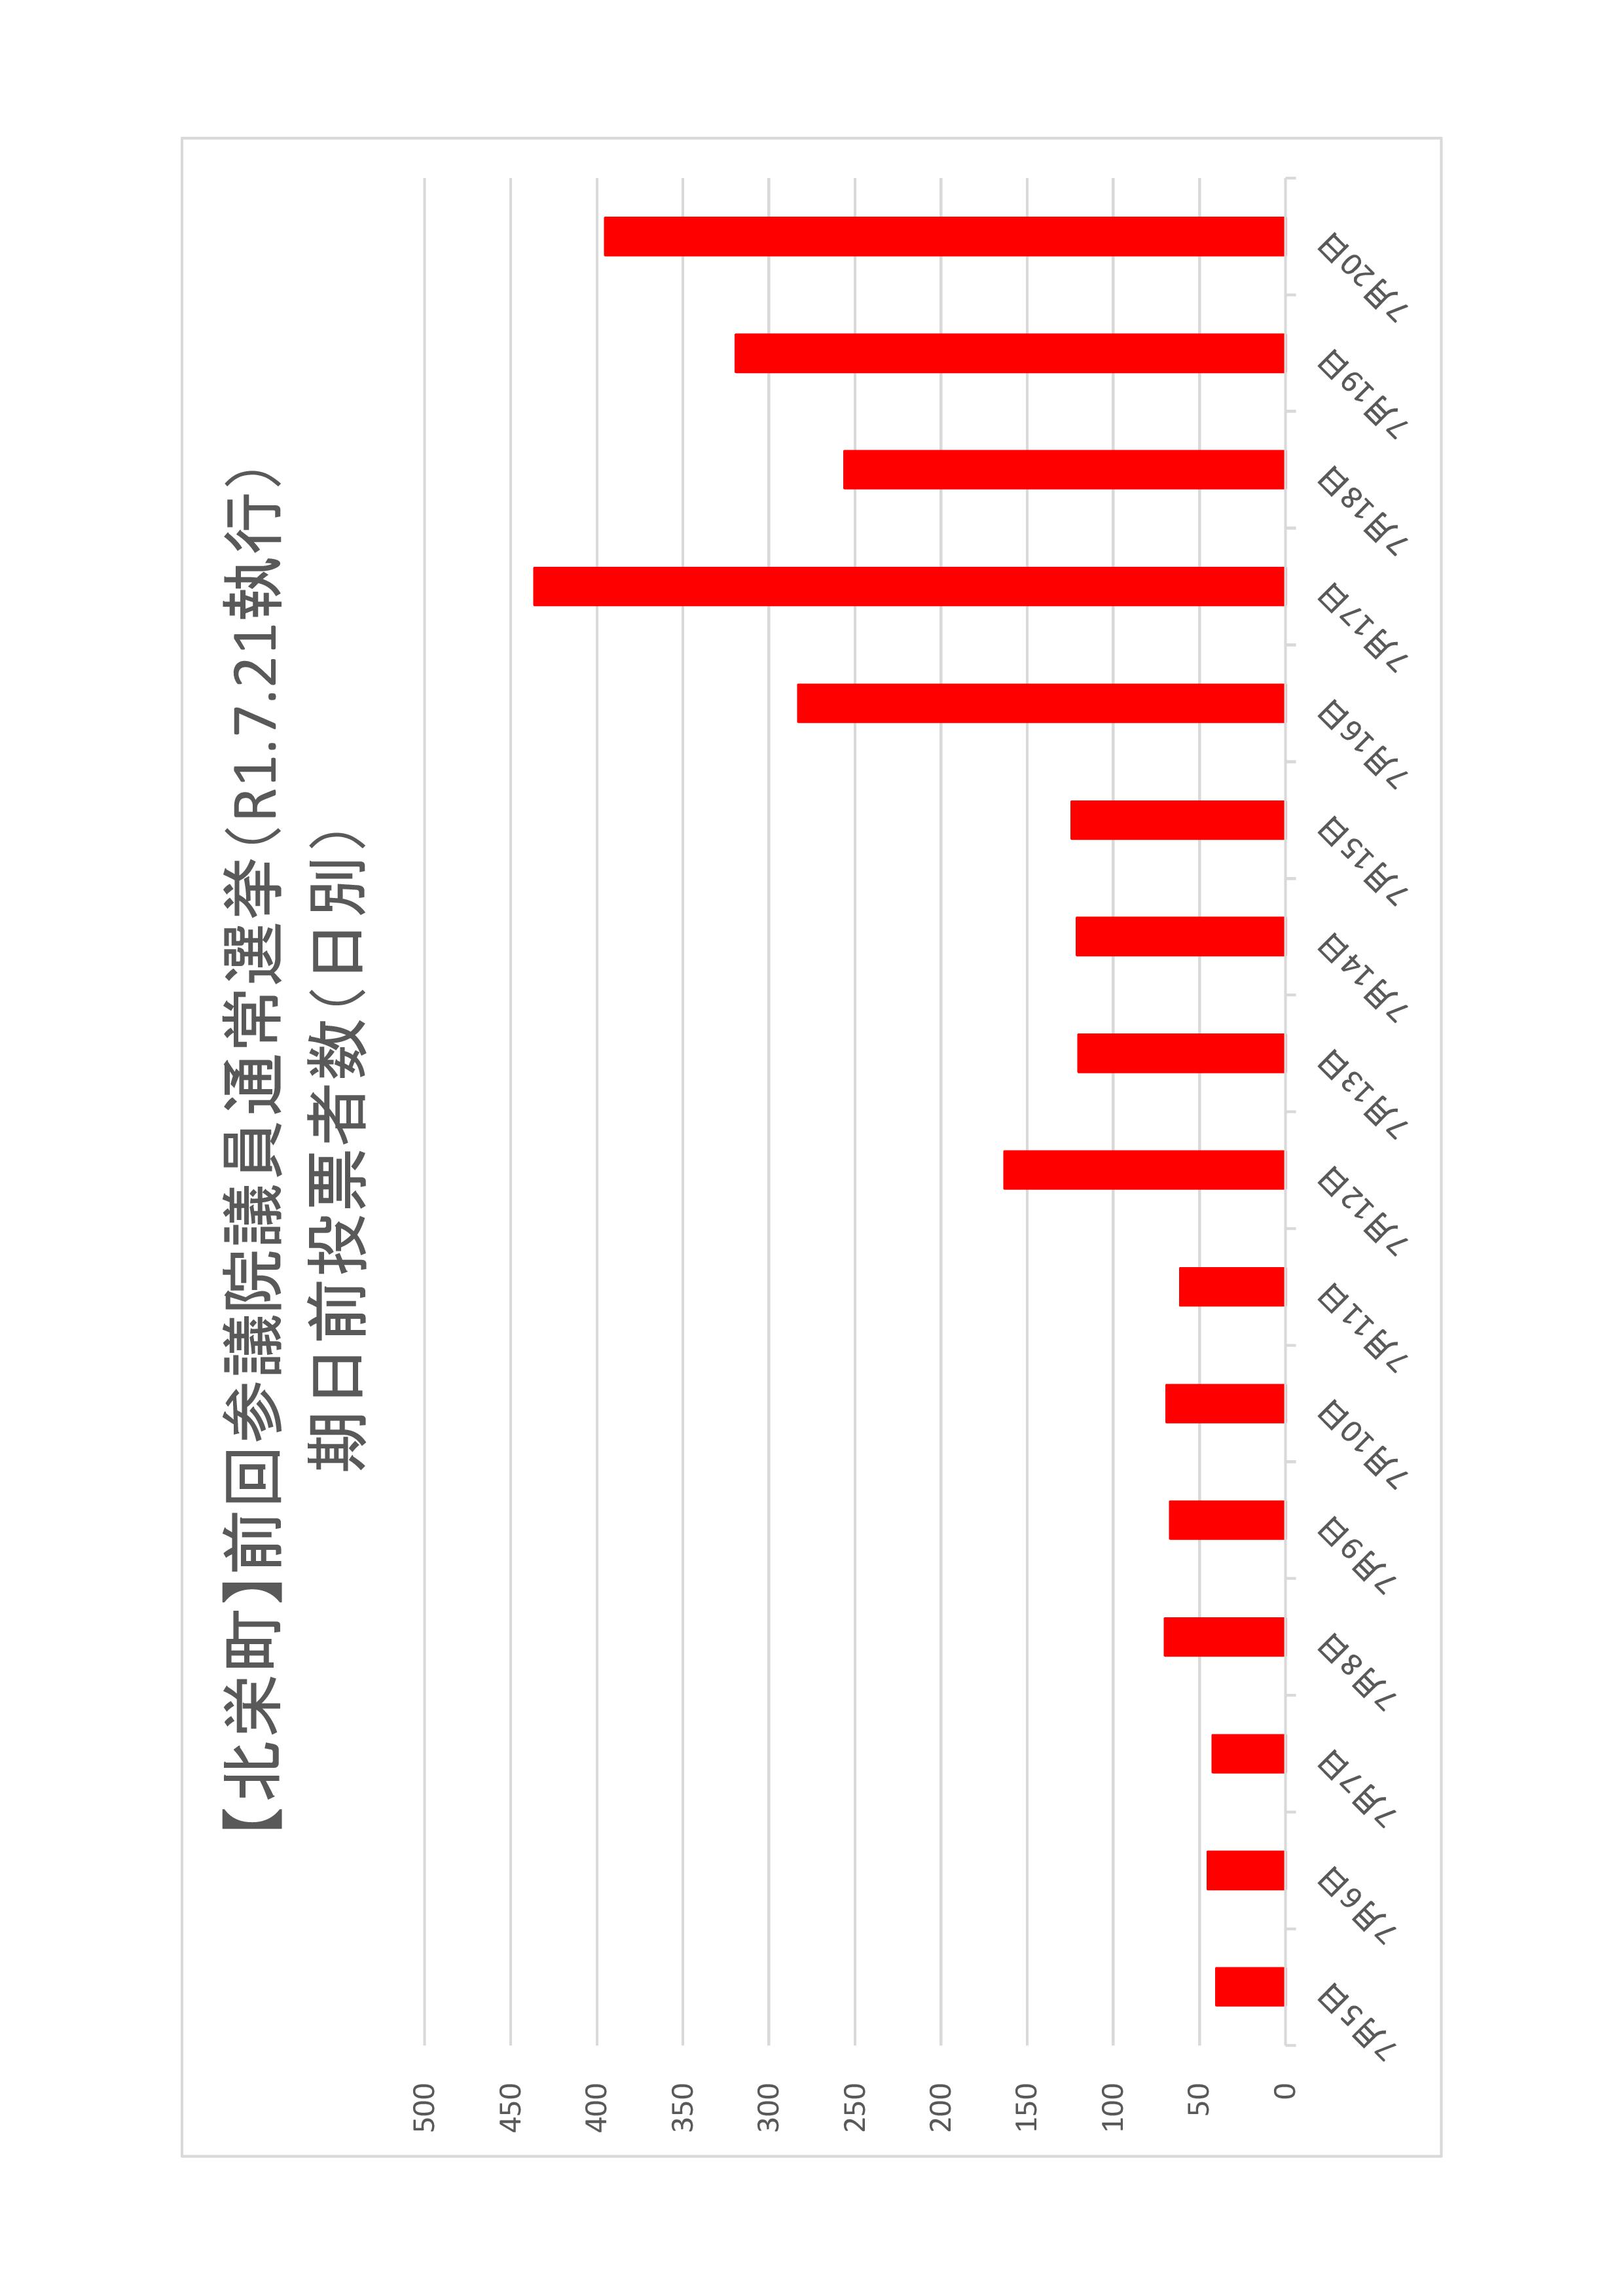 北栄町の日別期日前投票者数のグラフ